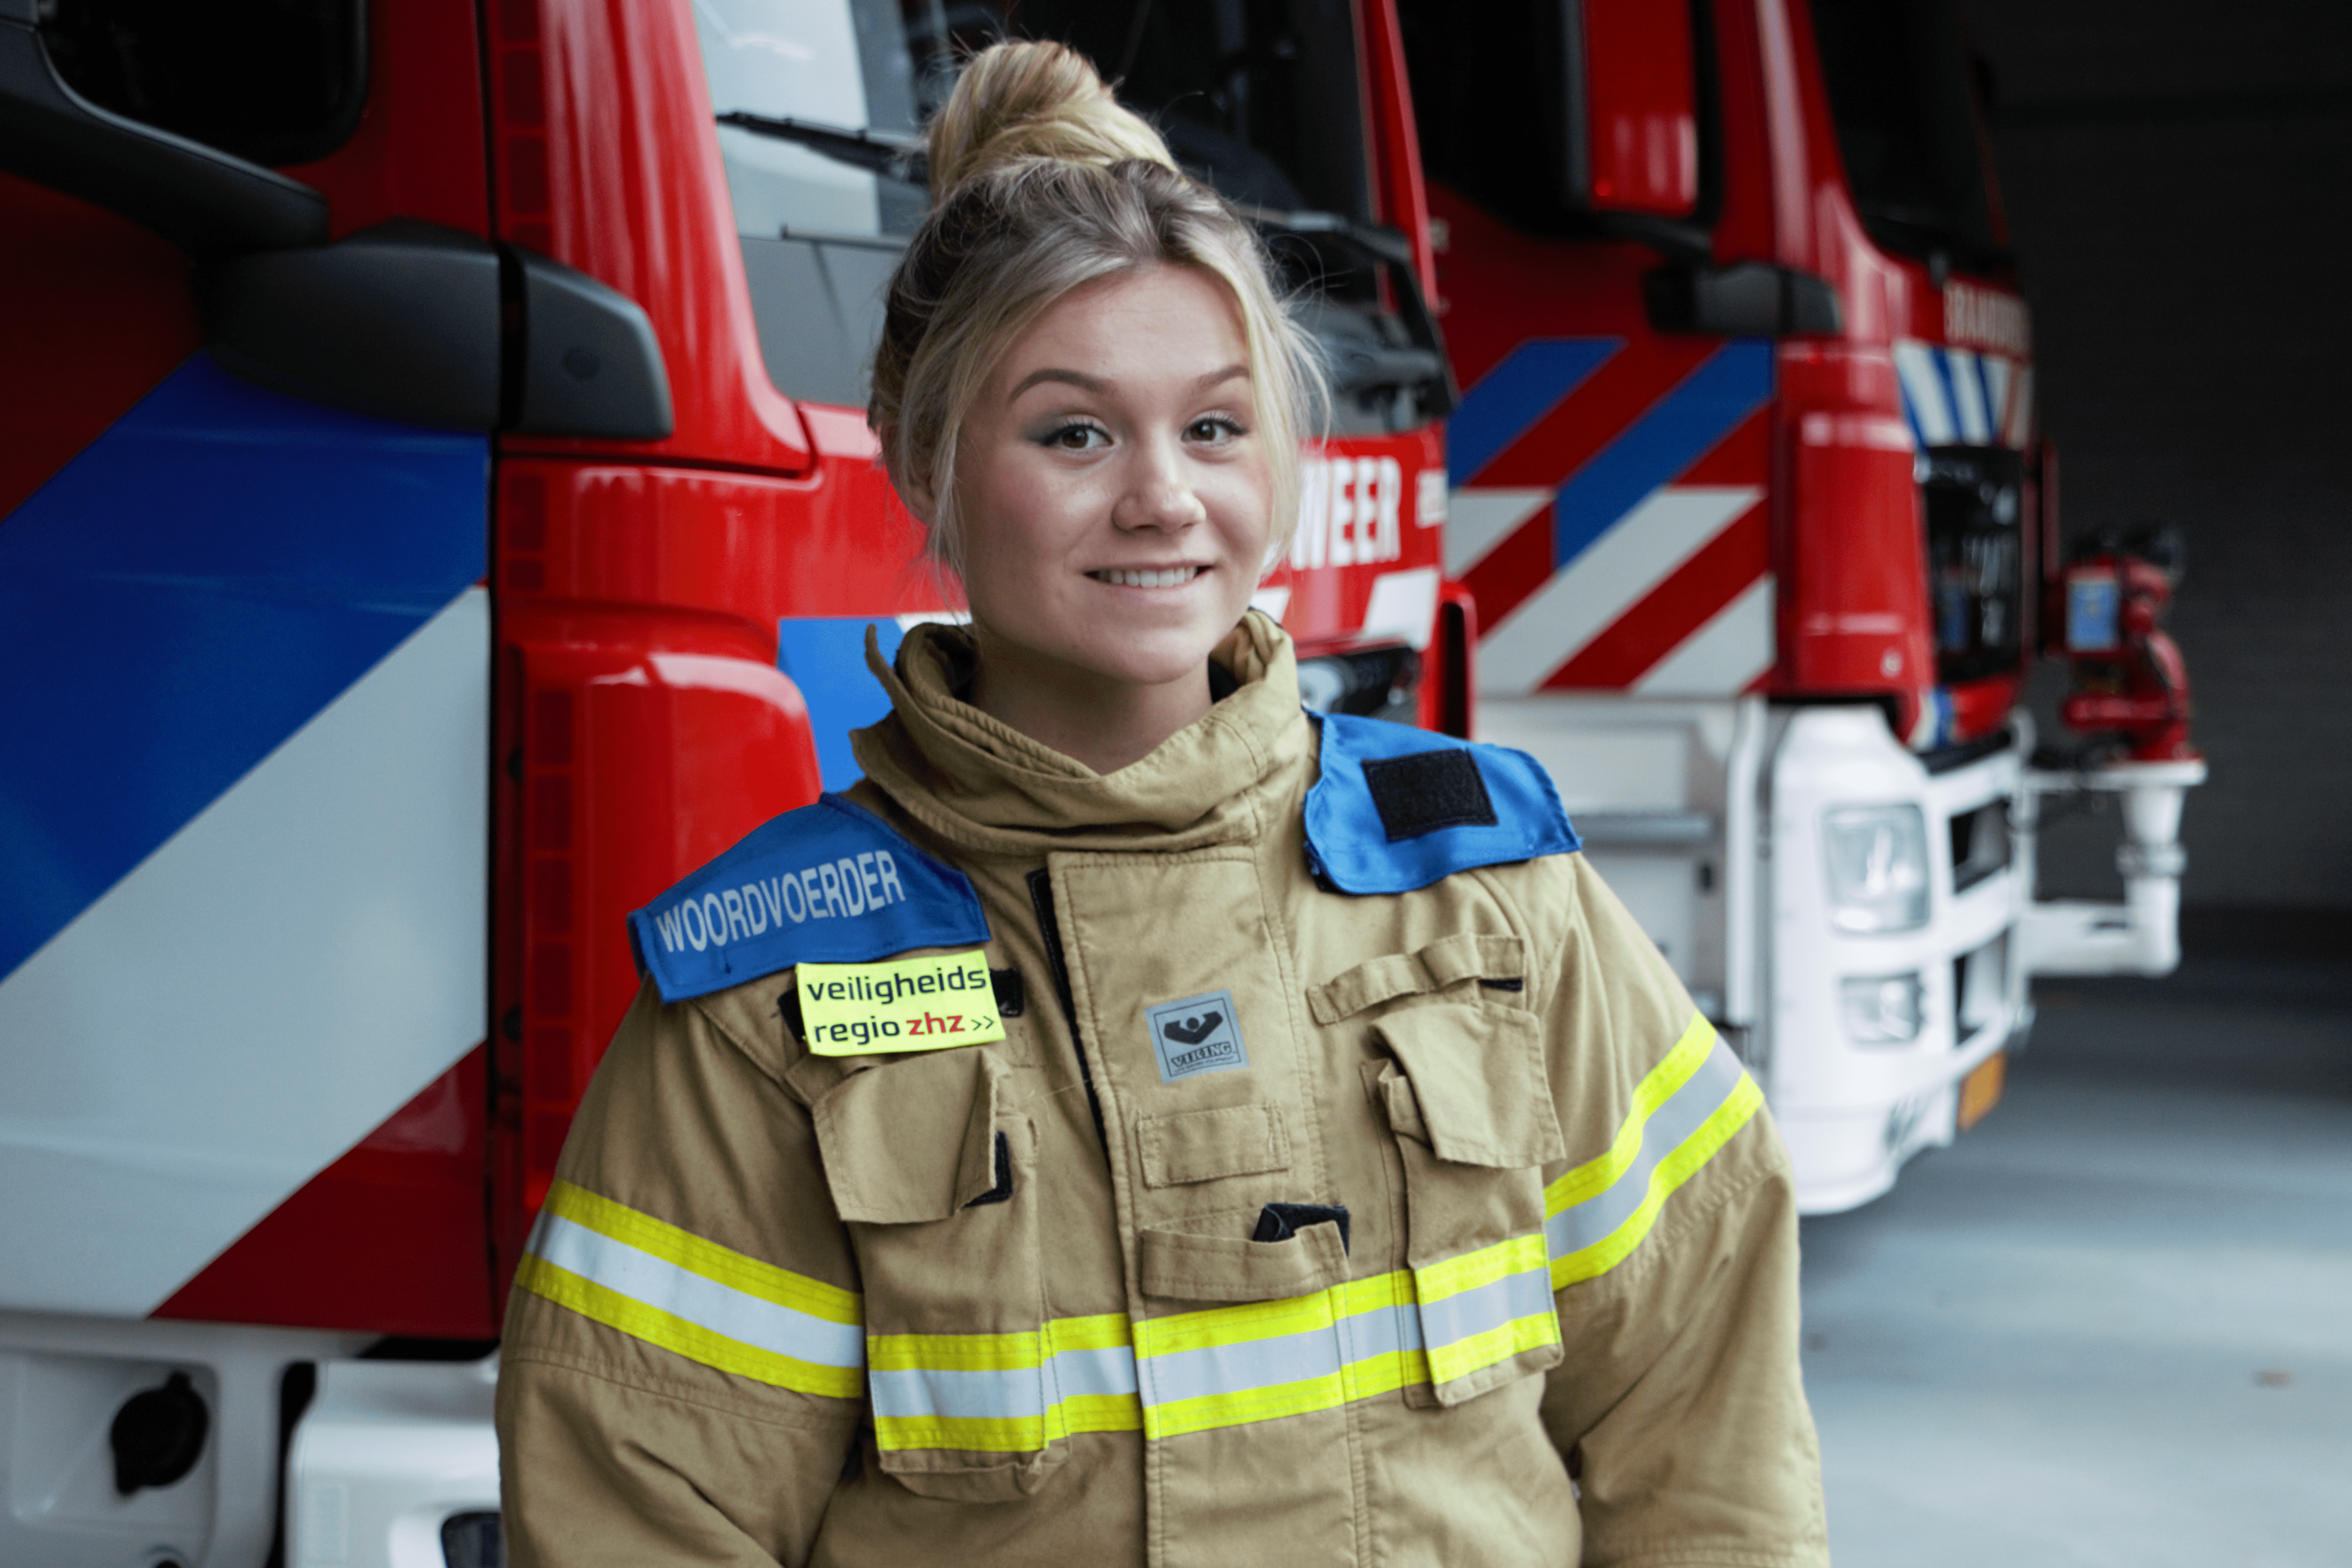 Woordvoerder Julia Kruit in een blusjas voor een brandweerauto